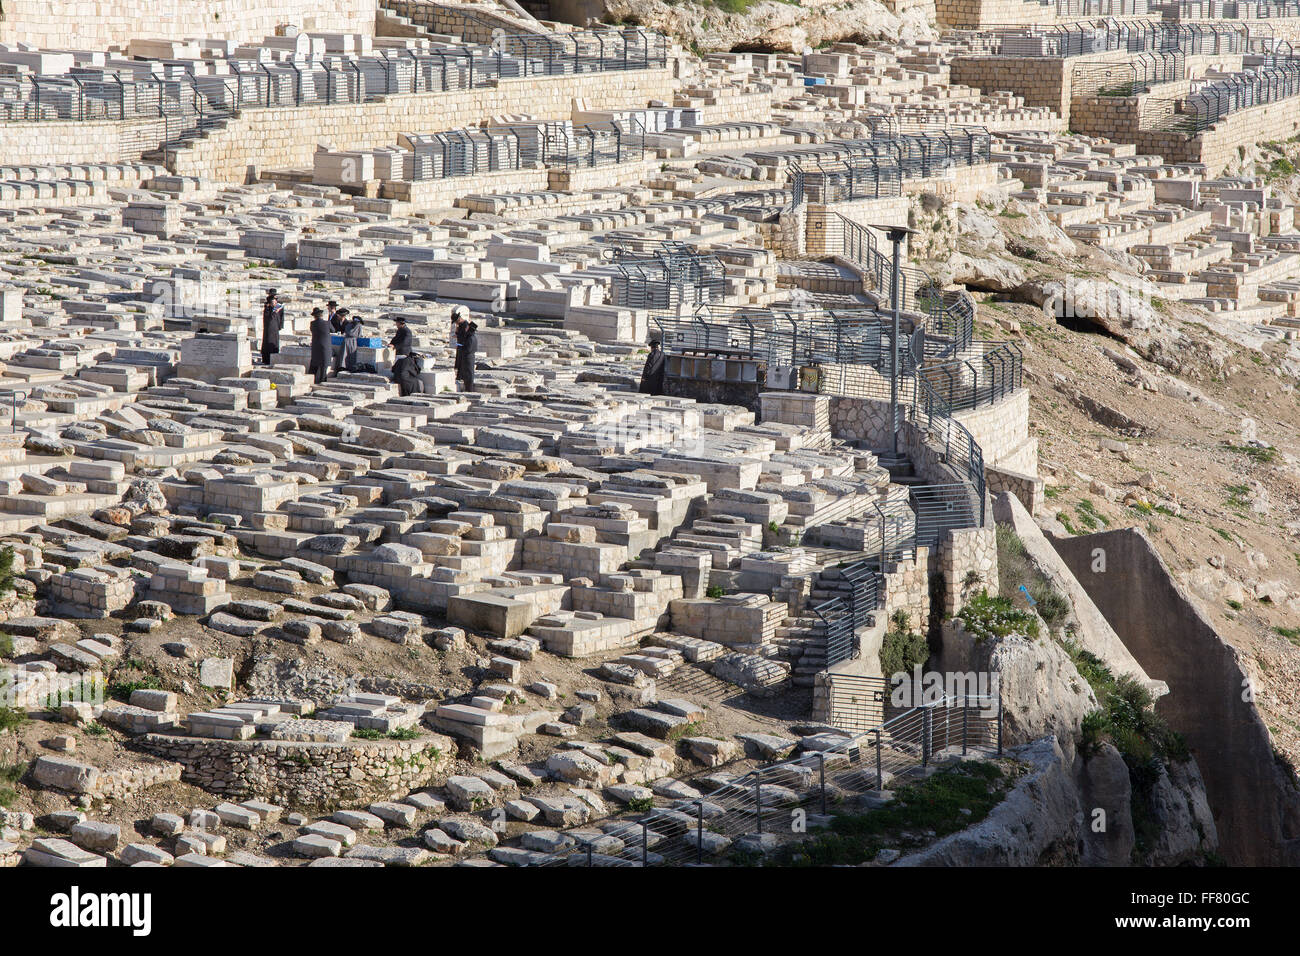 Jérusalem, Israël - 3 mars 2015 : Le cimetière juif sur le Mont des Oliviers et de l'enfouissement des Juifs orthodoxes. Banque D'Images